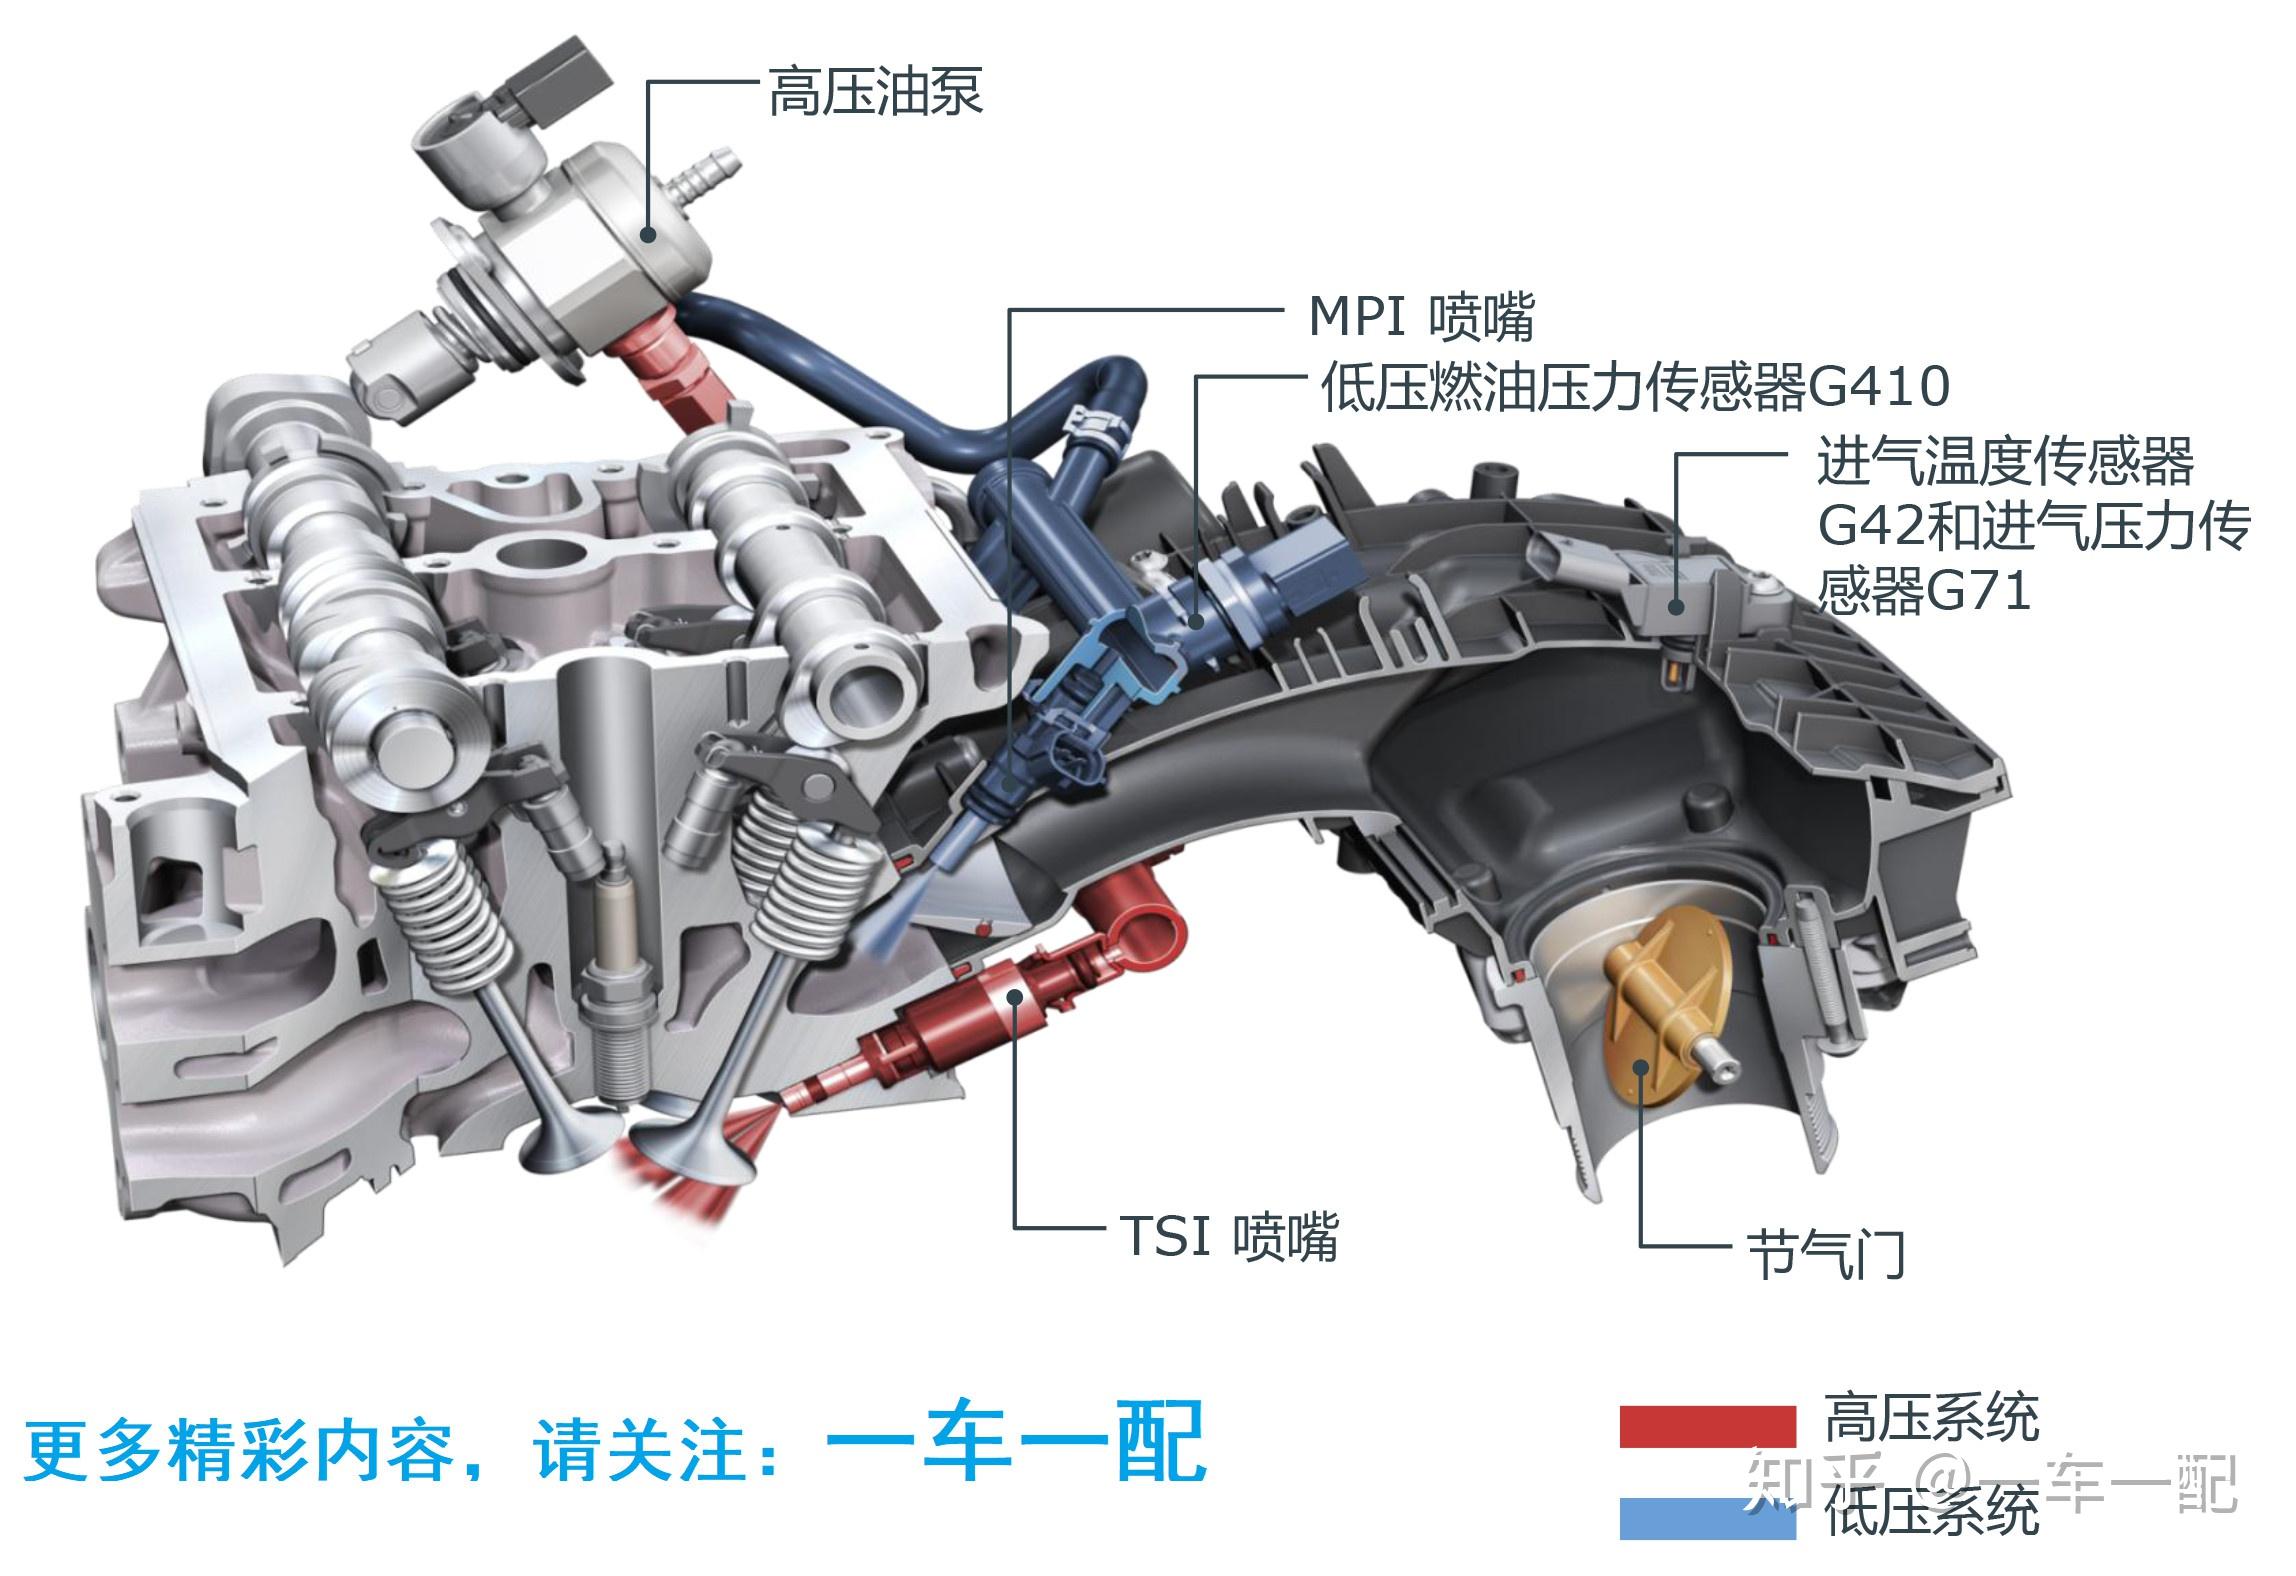 系统缸内直喷fsi 进气歧管mpi上汽大众ea888 tsi第三代涡轮增压发动机